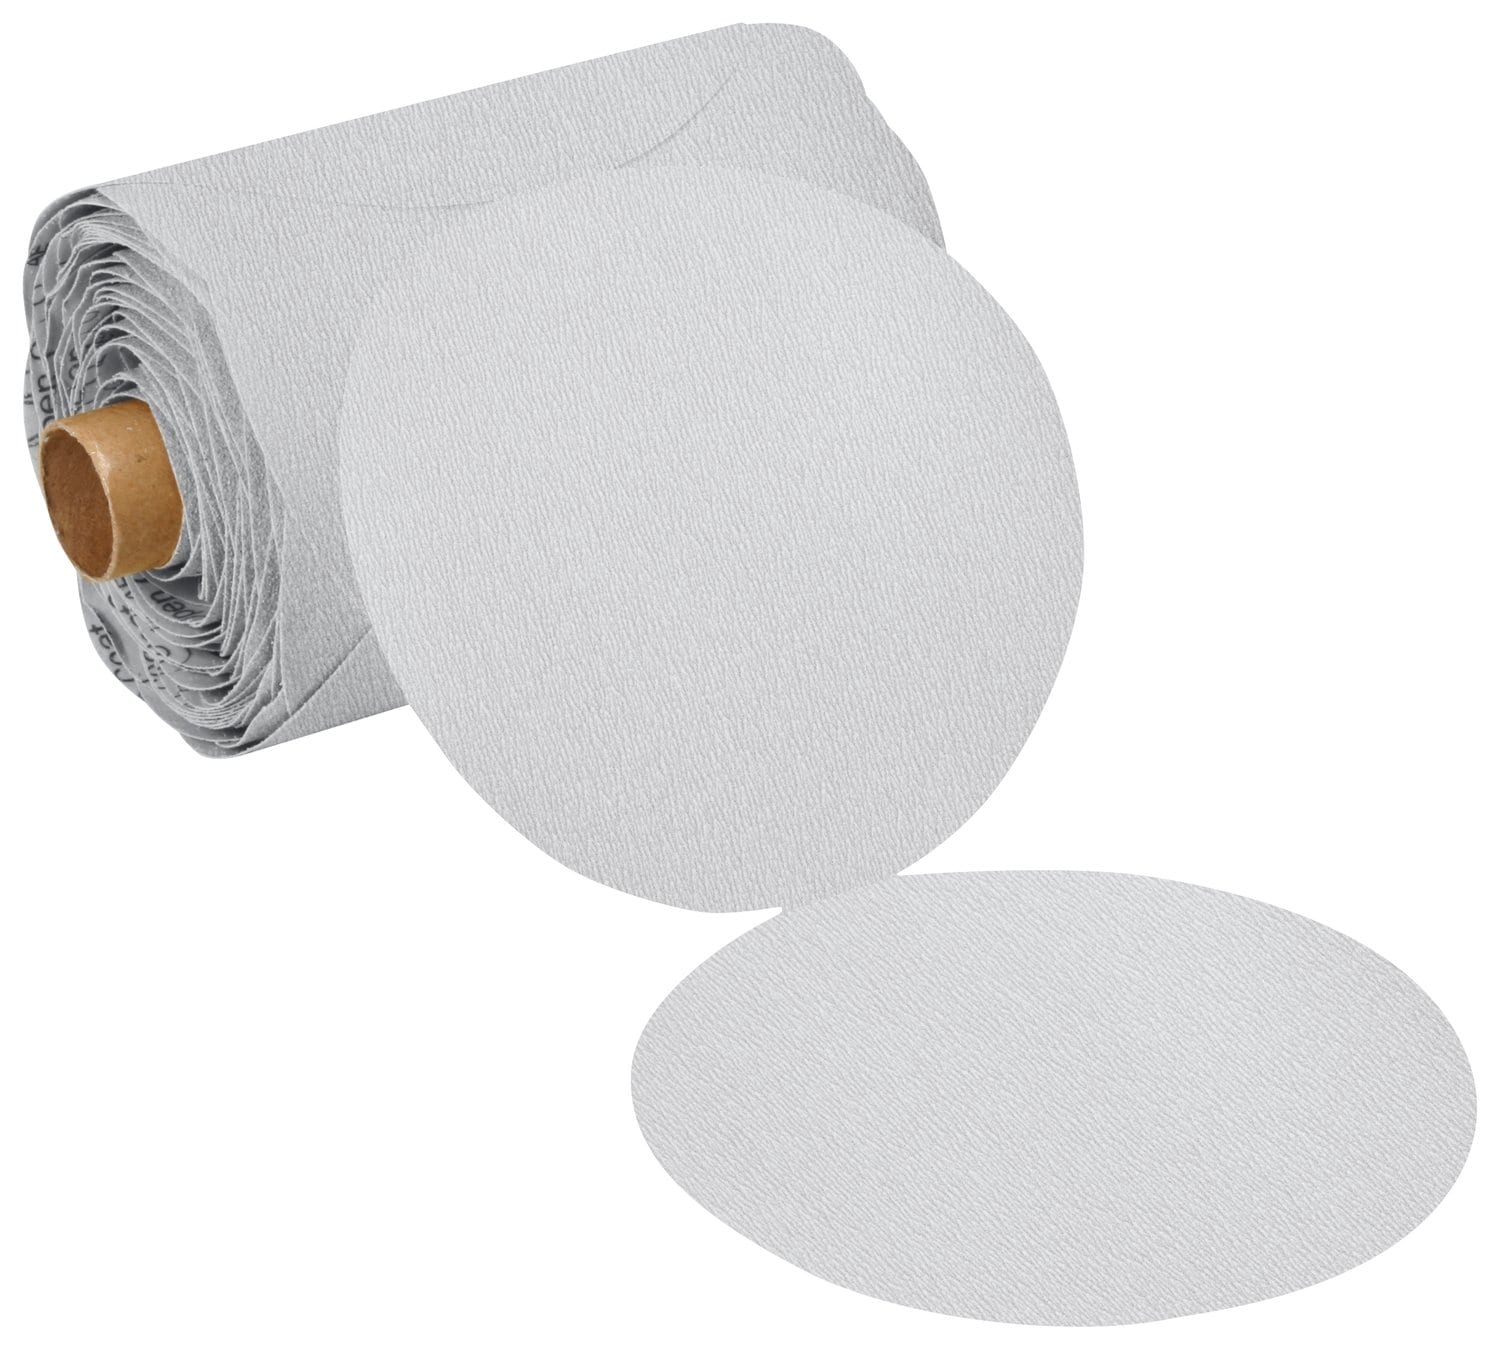 7010508714 - 3M Stikit Paper Disc Roll 426U, 180 A-weight, 8 in x NH, Die 800L, 125
discs per roll